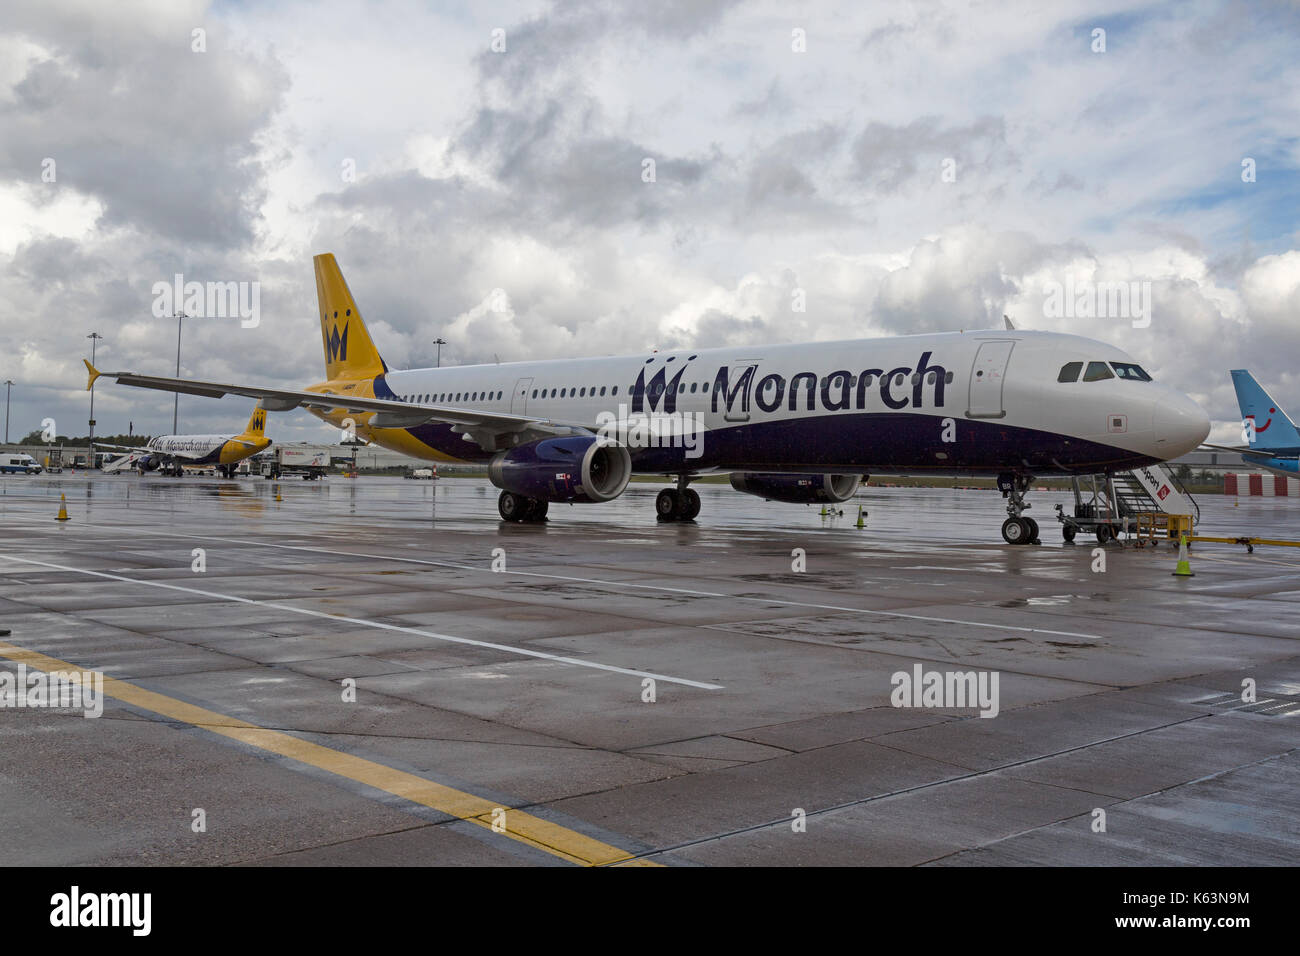 Monarch Airlines Airbus A321, G-OZBR, en el aeropuerto de Birmingham en Inglaterra. Foto de stock